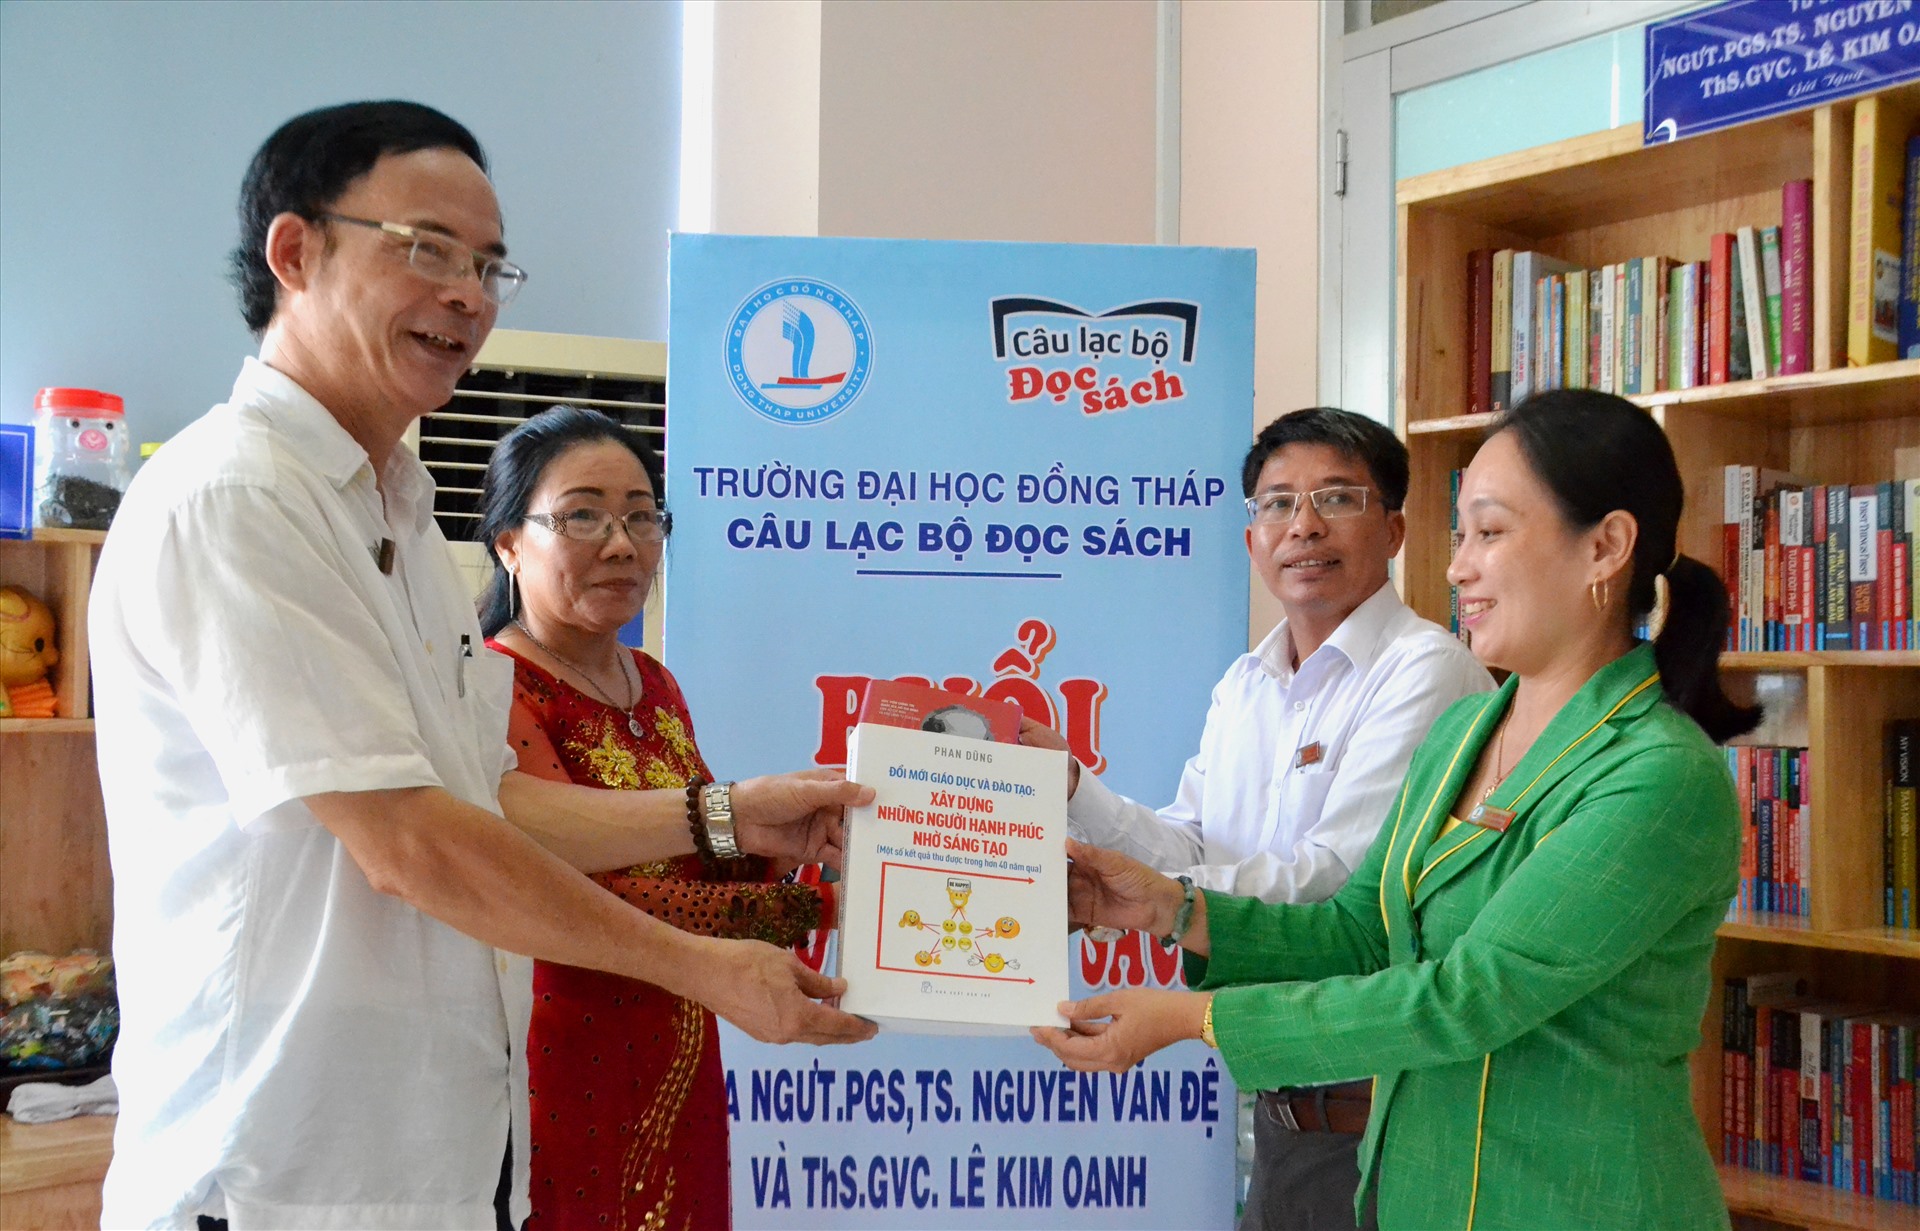 PGS.TS Nguyễn Văn Đệ tặng tủ sách cho ĐH Đồng Tháp trước khi nghỉ hưu. Ảnh: LT